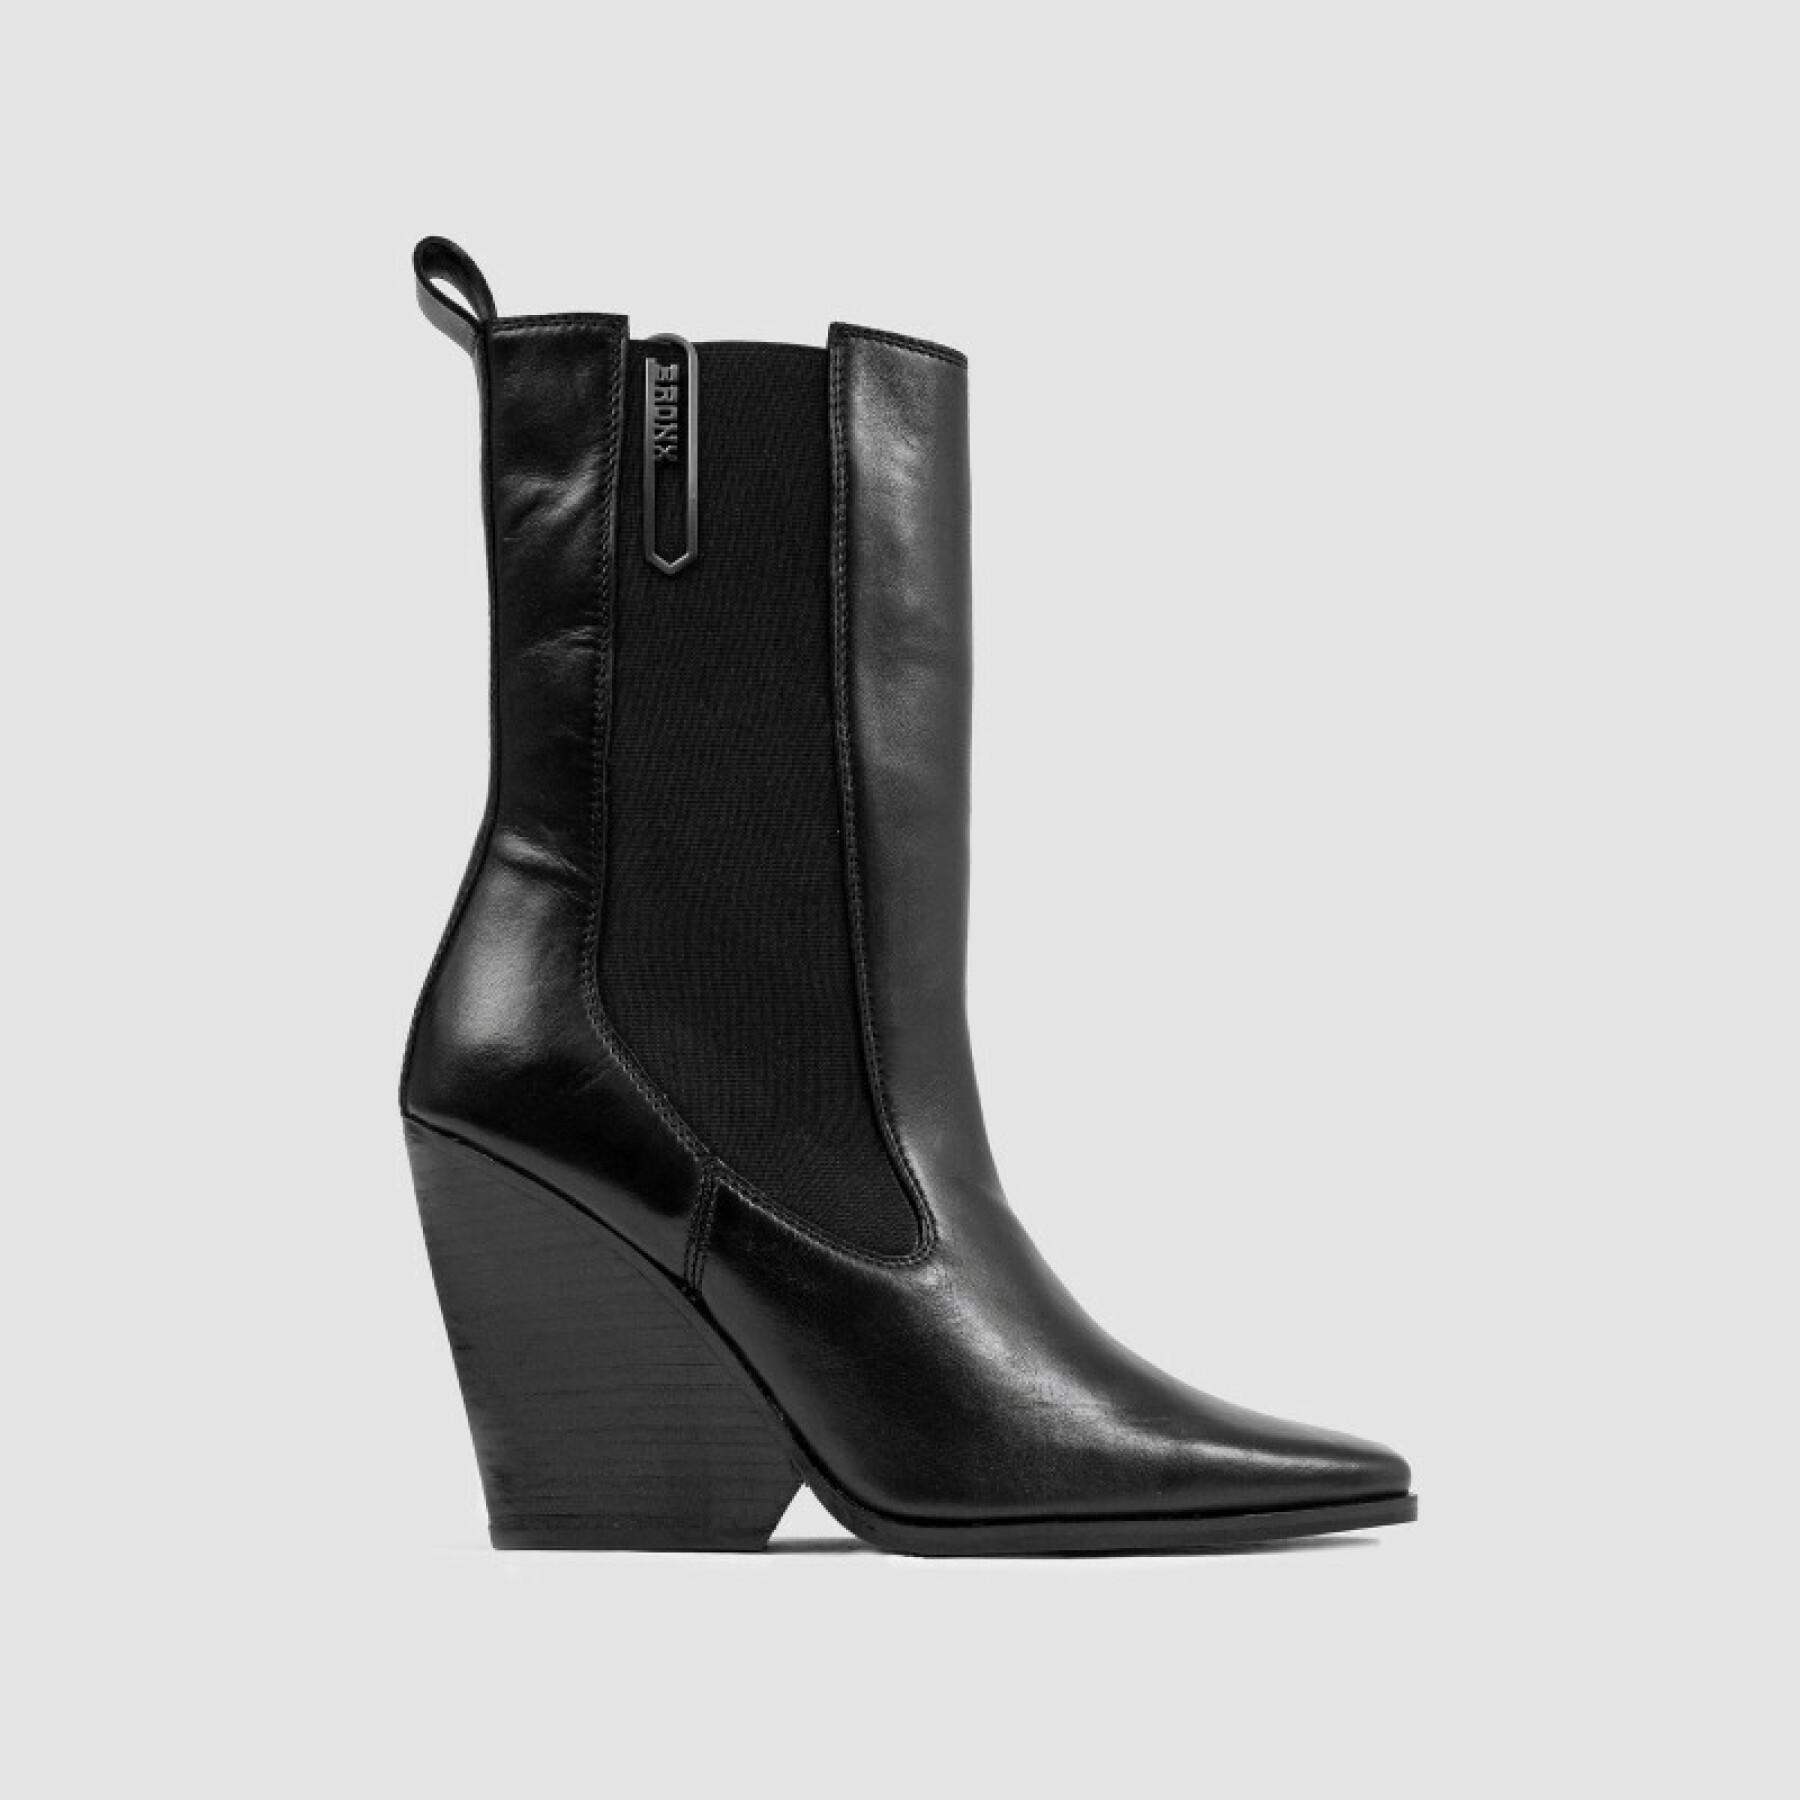 Women's boots Bronx 34188-A-01